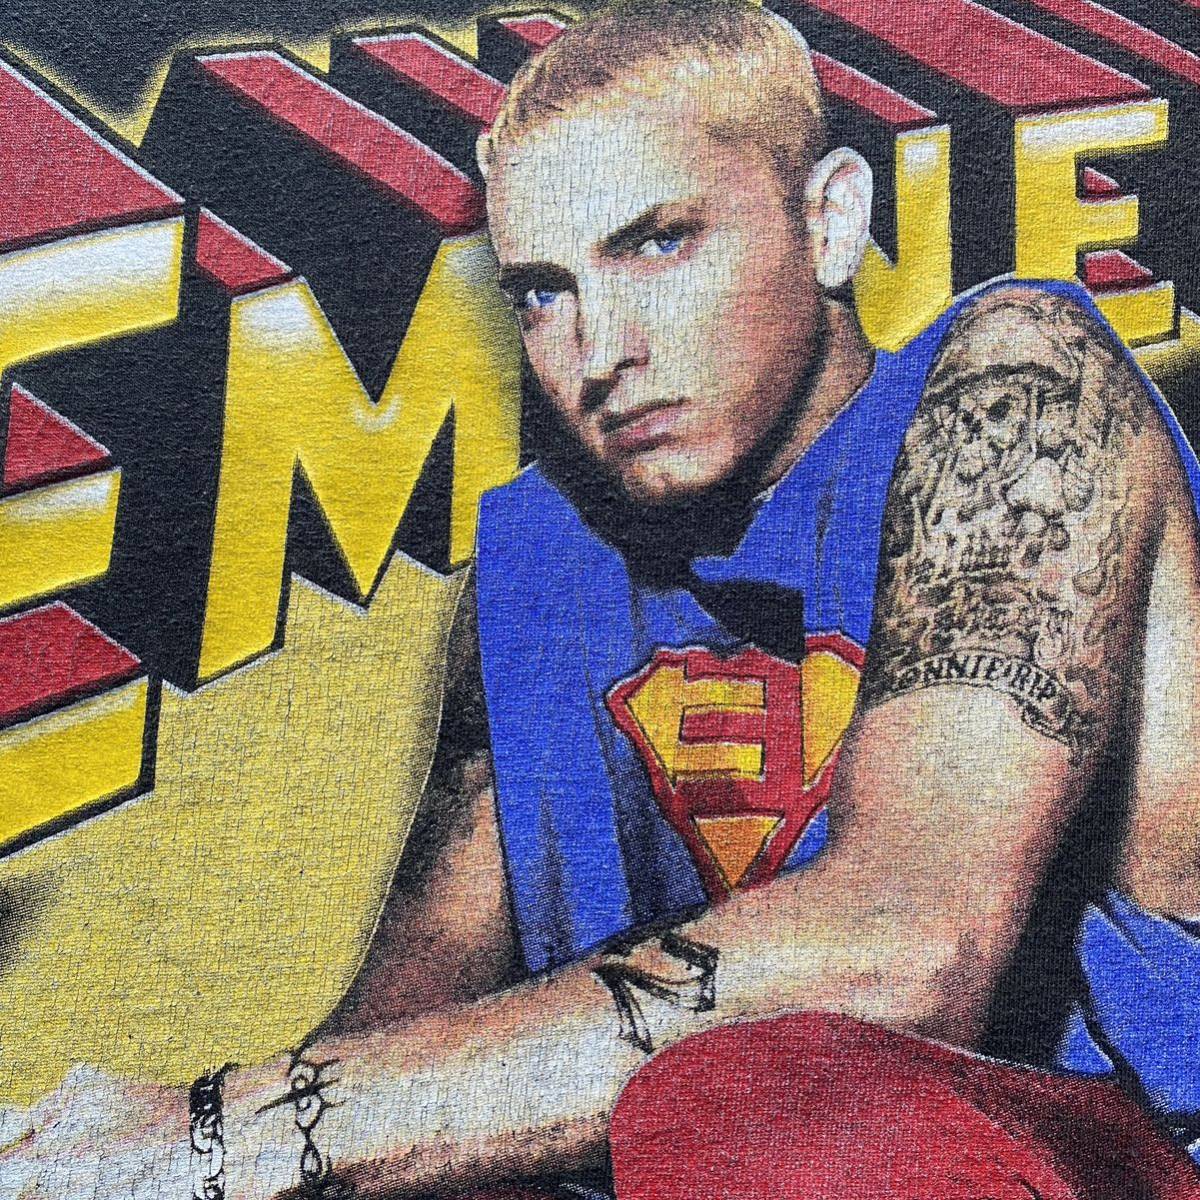 レア 古着 Eminem Anger Management Tour Tee XL 2002 Rap Band Tシャツ バンドT ラップT エミネム アンガーマネジメント ツアー KOHH 着用_画像3